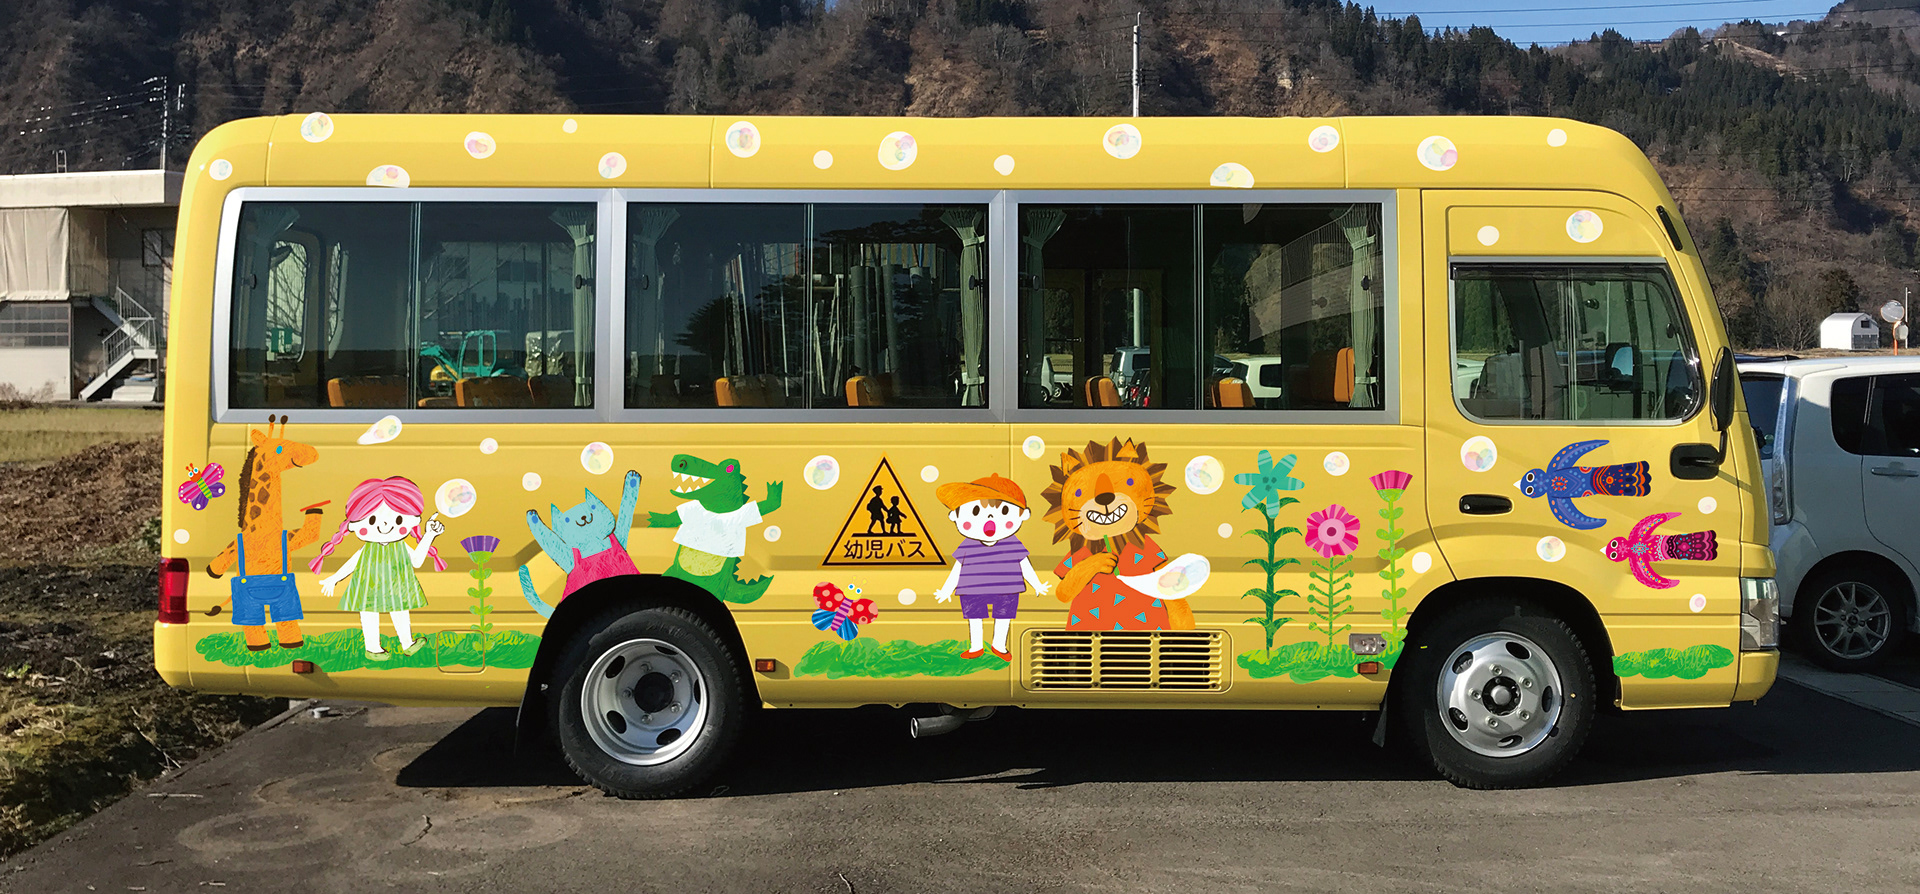 Biko 園児バス